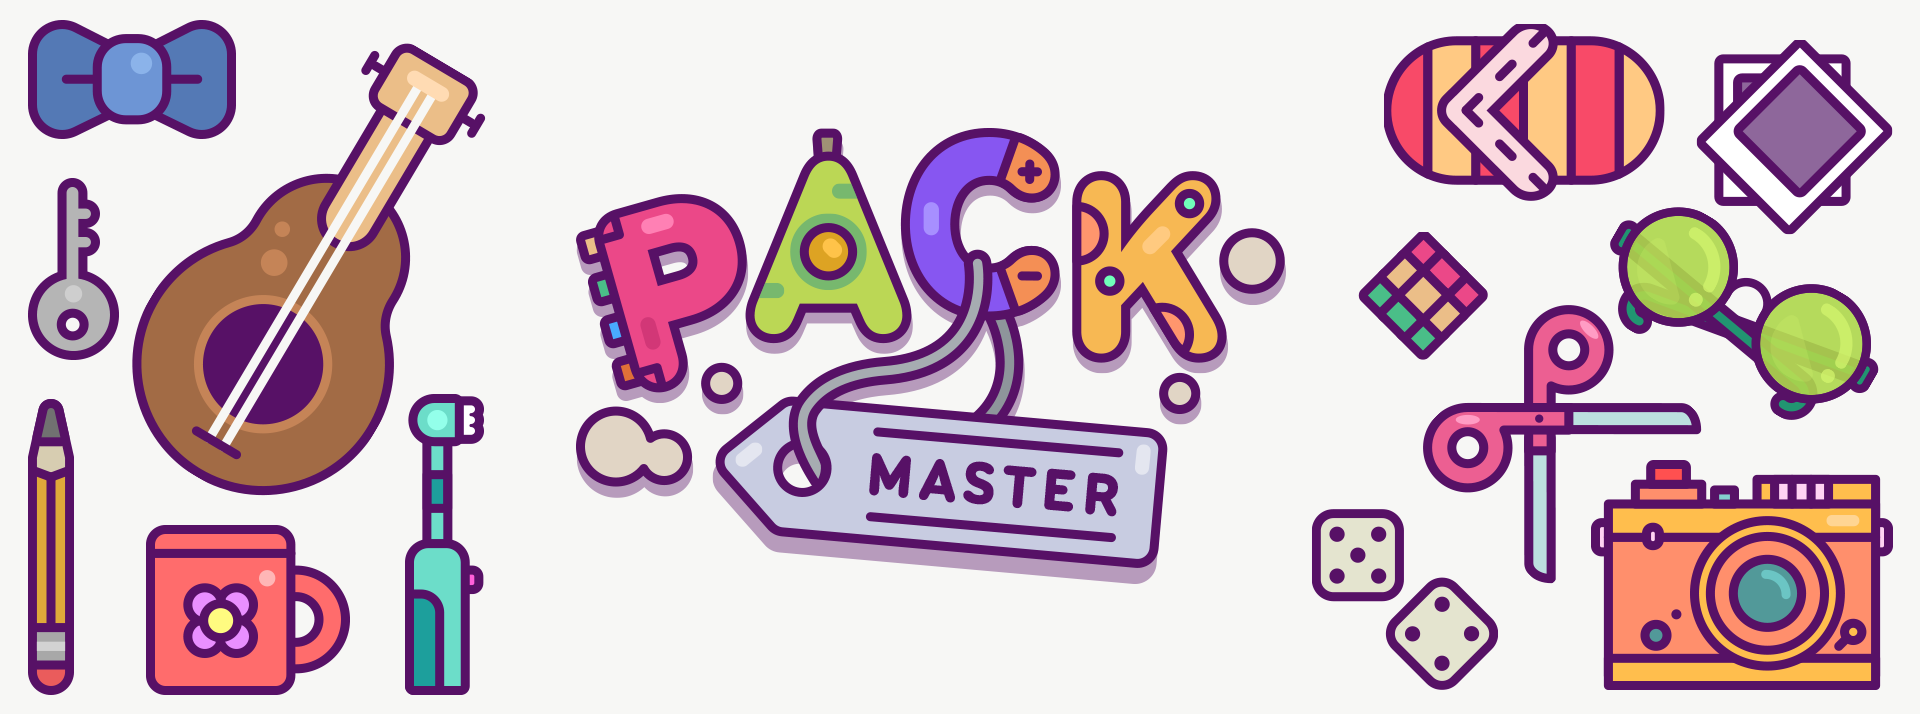 Pack Master